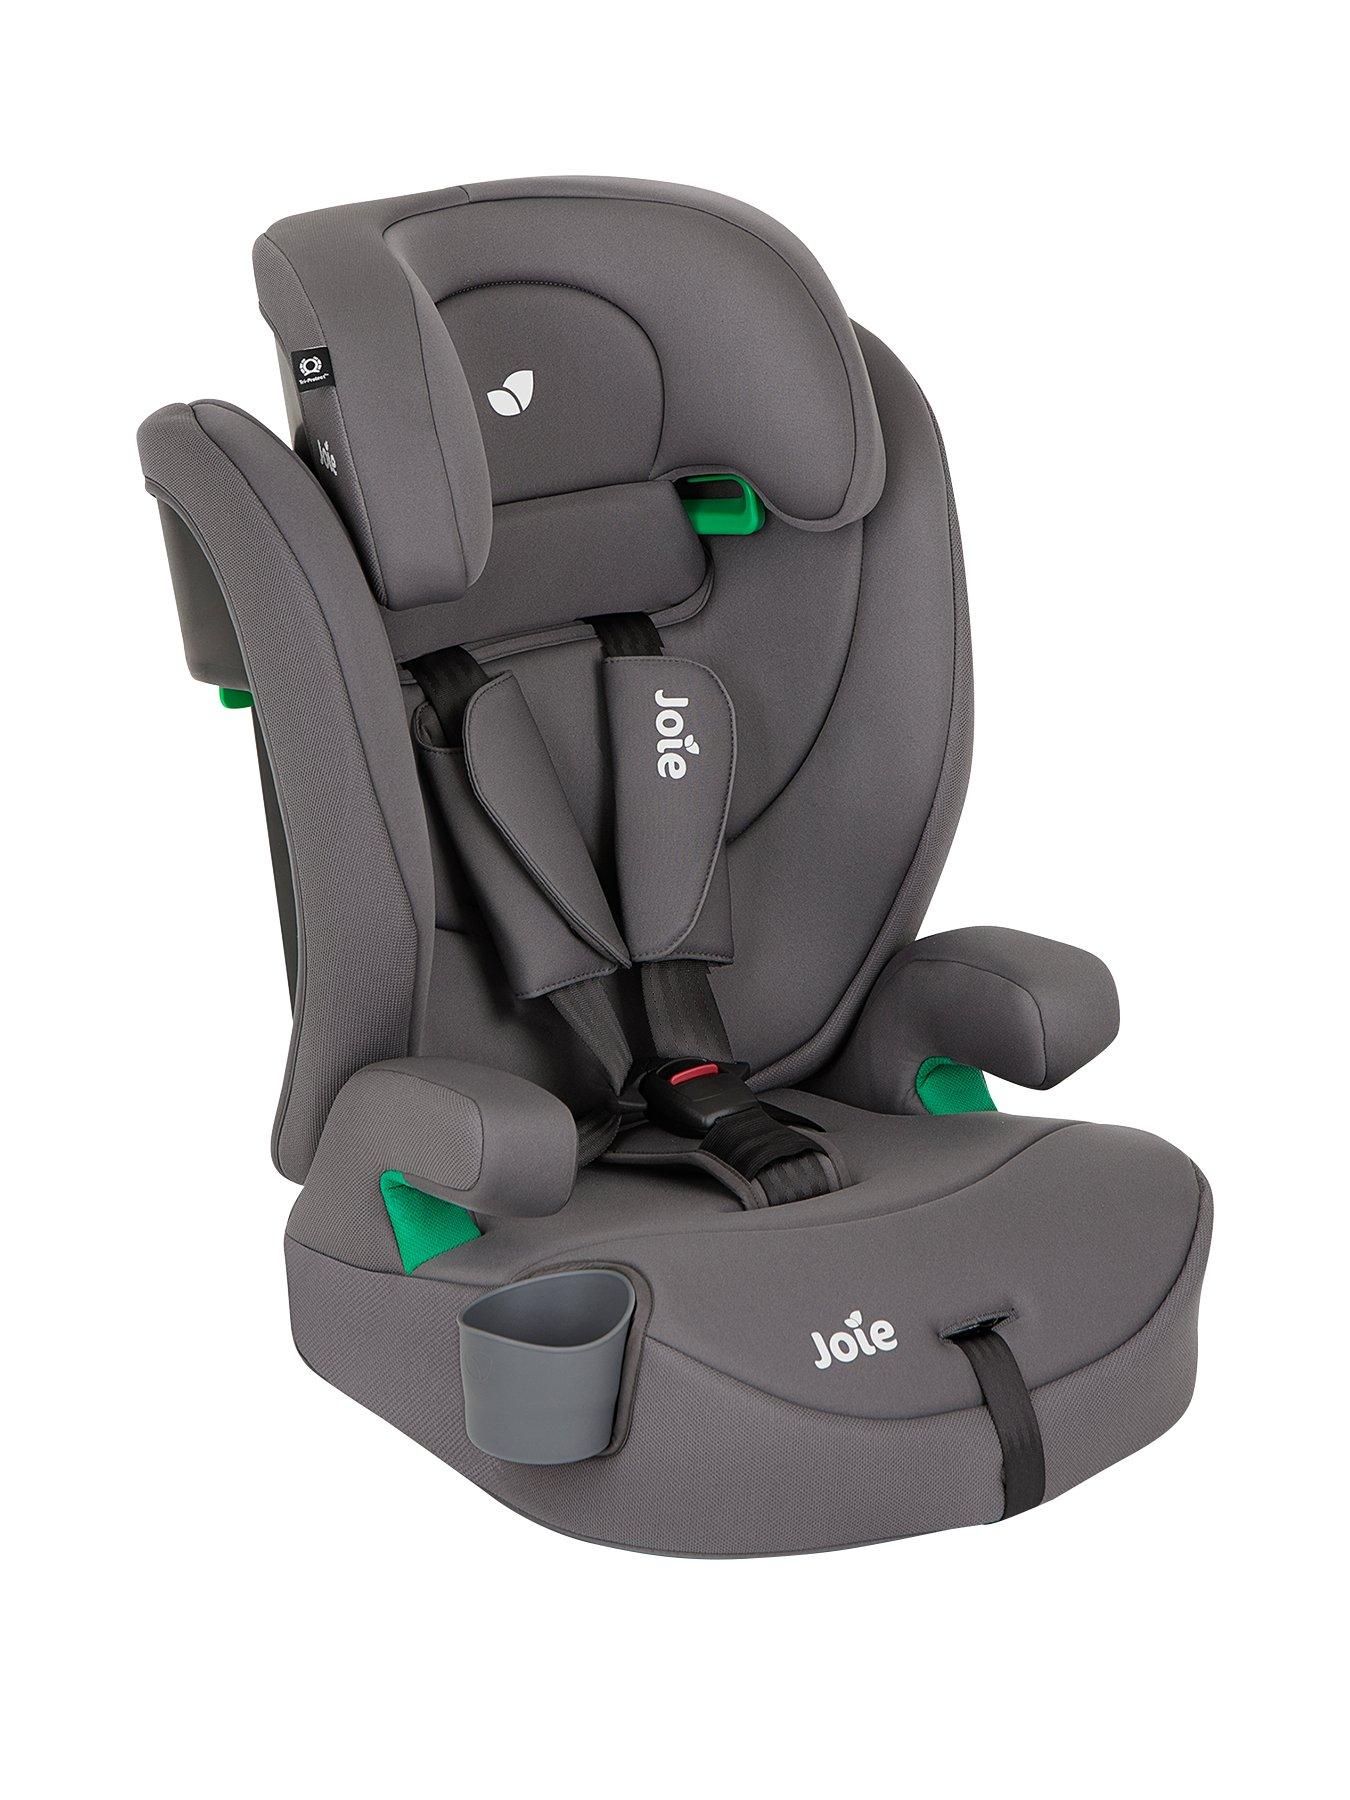 Kinderkraft Oneto3 Group 1/2/3 Car Seat with ISOFIX Base - Black/Gray